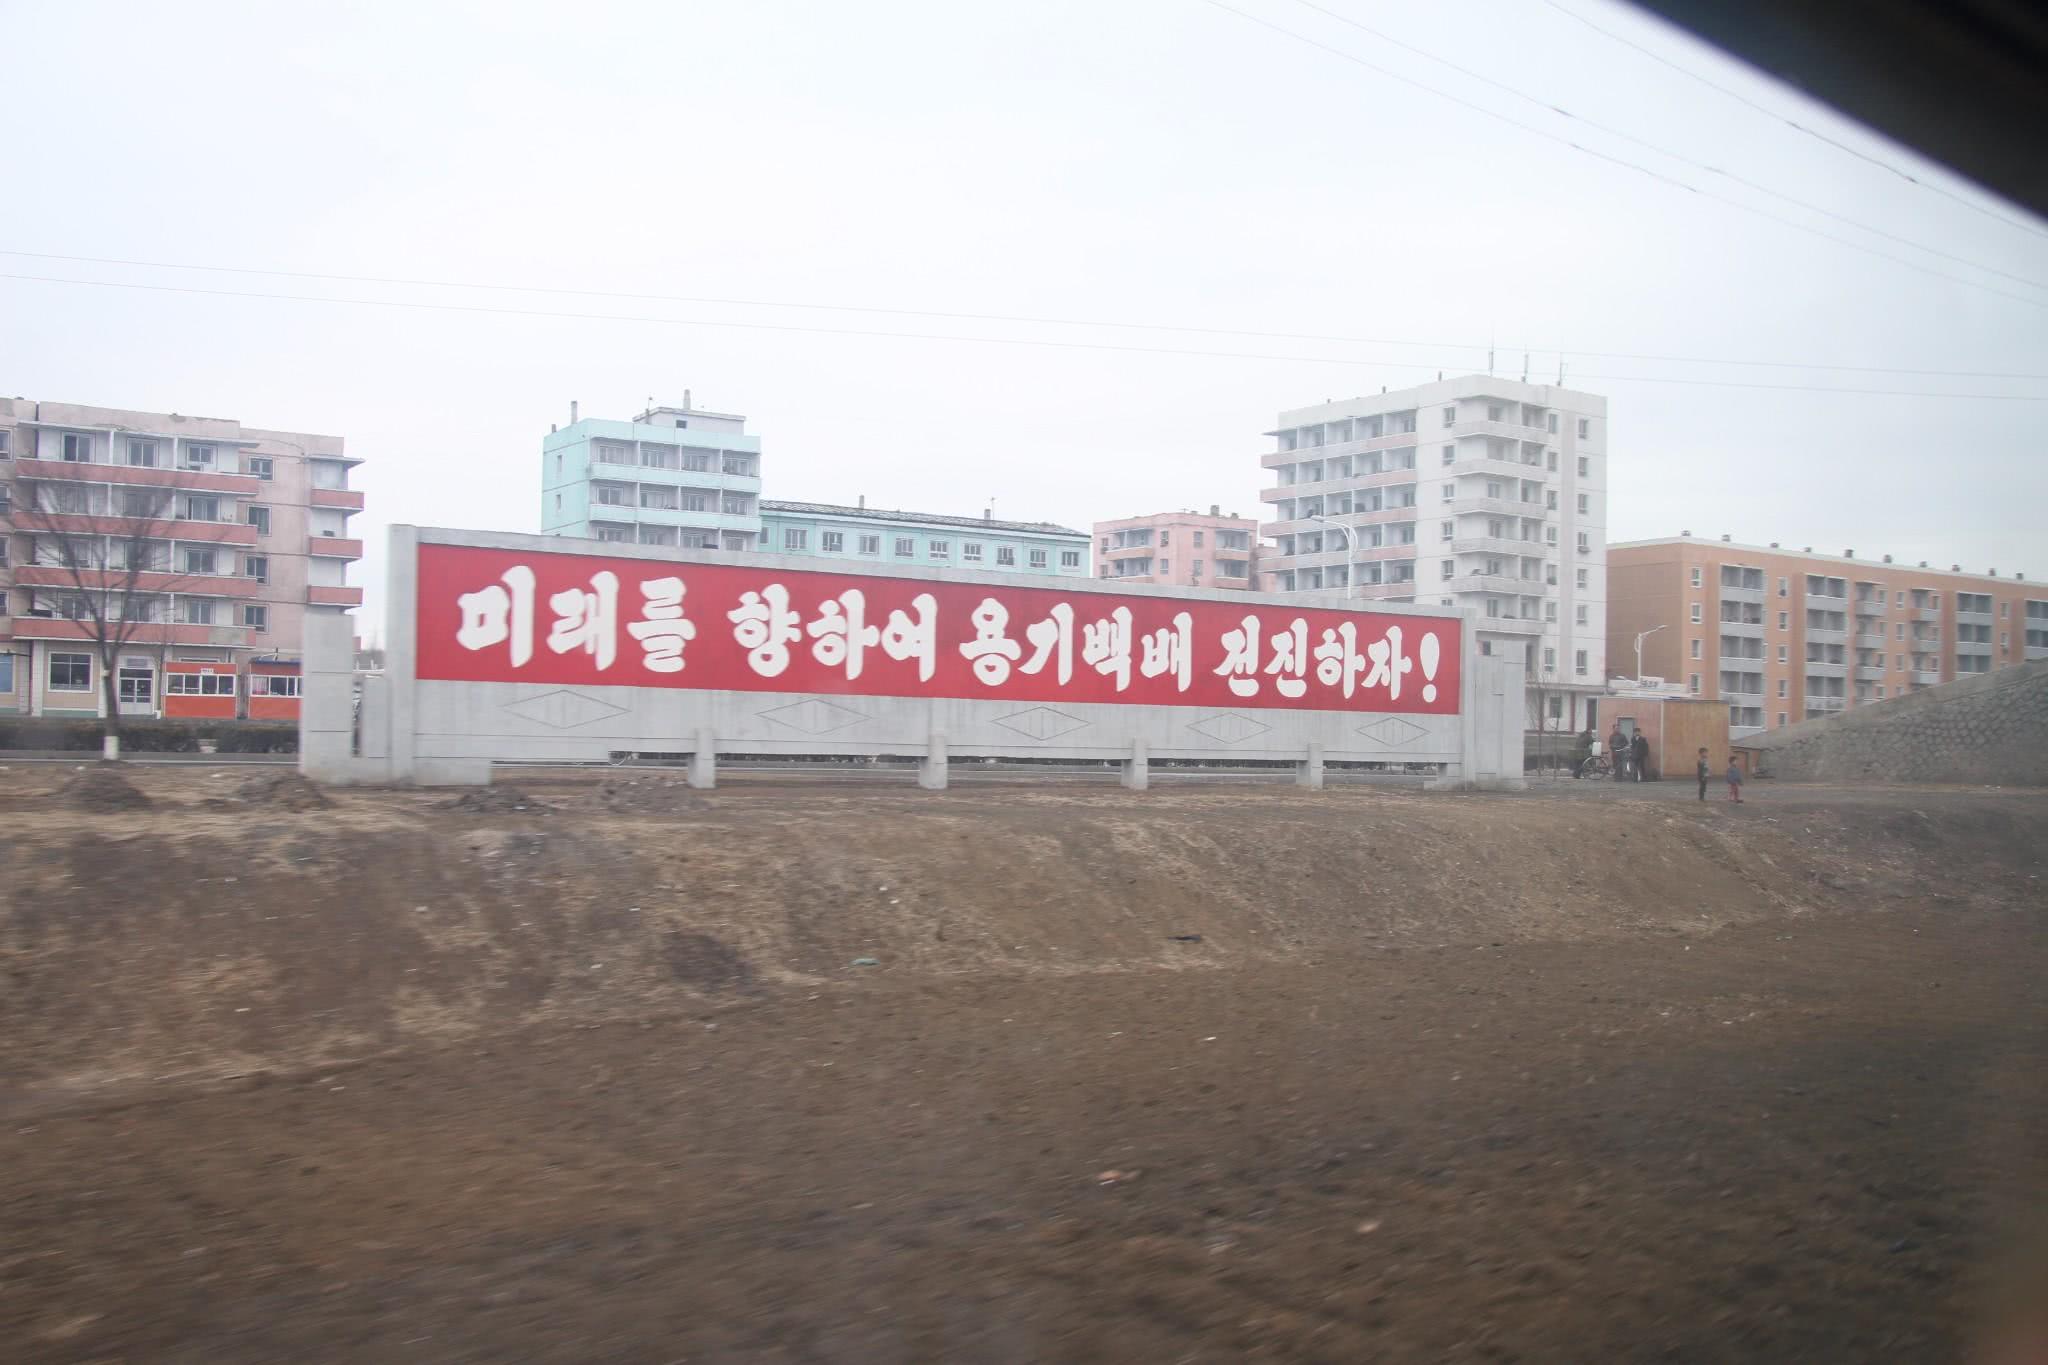 朝鲜的愿景：朝鲜进入并看到了我所居住的世界！